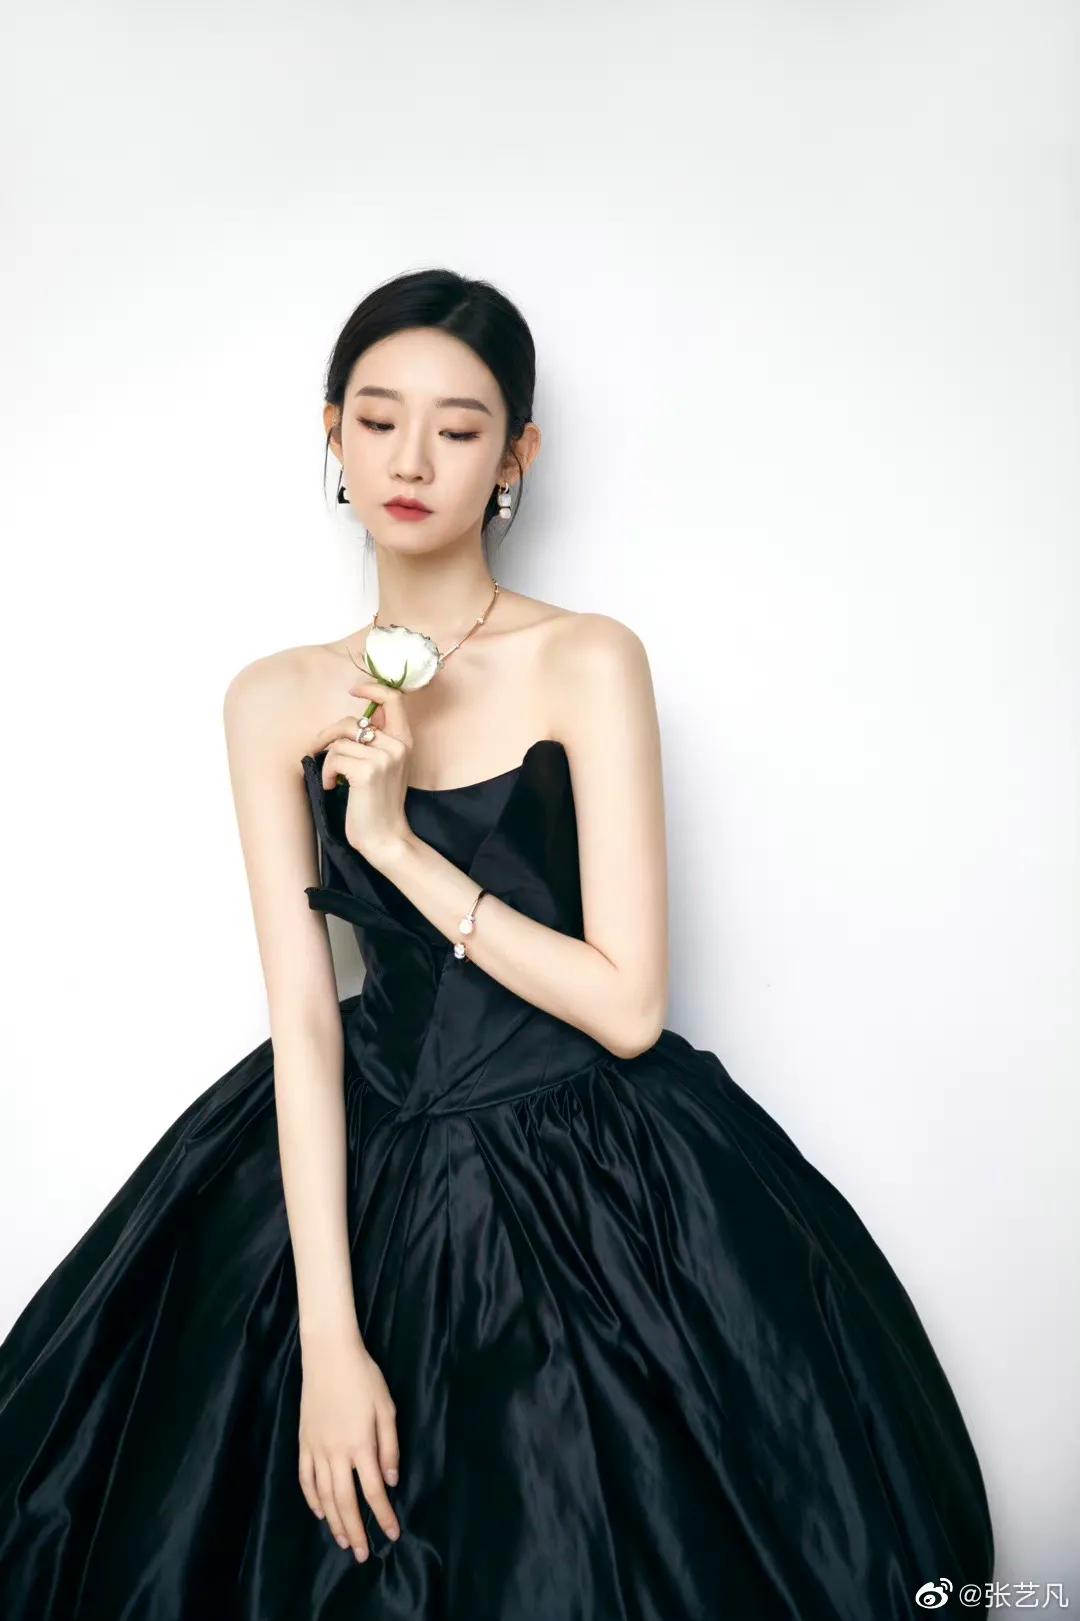 Zhang Yifan's beautiful picture - iNEWS